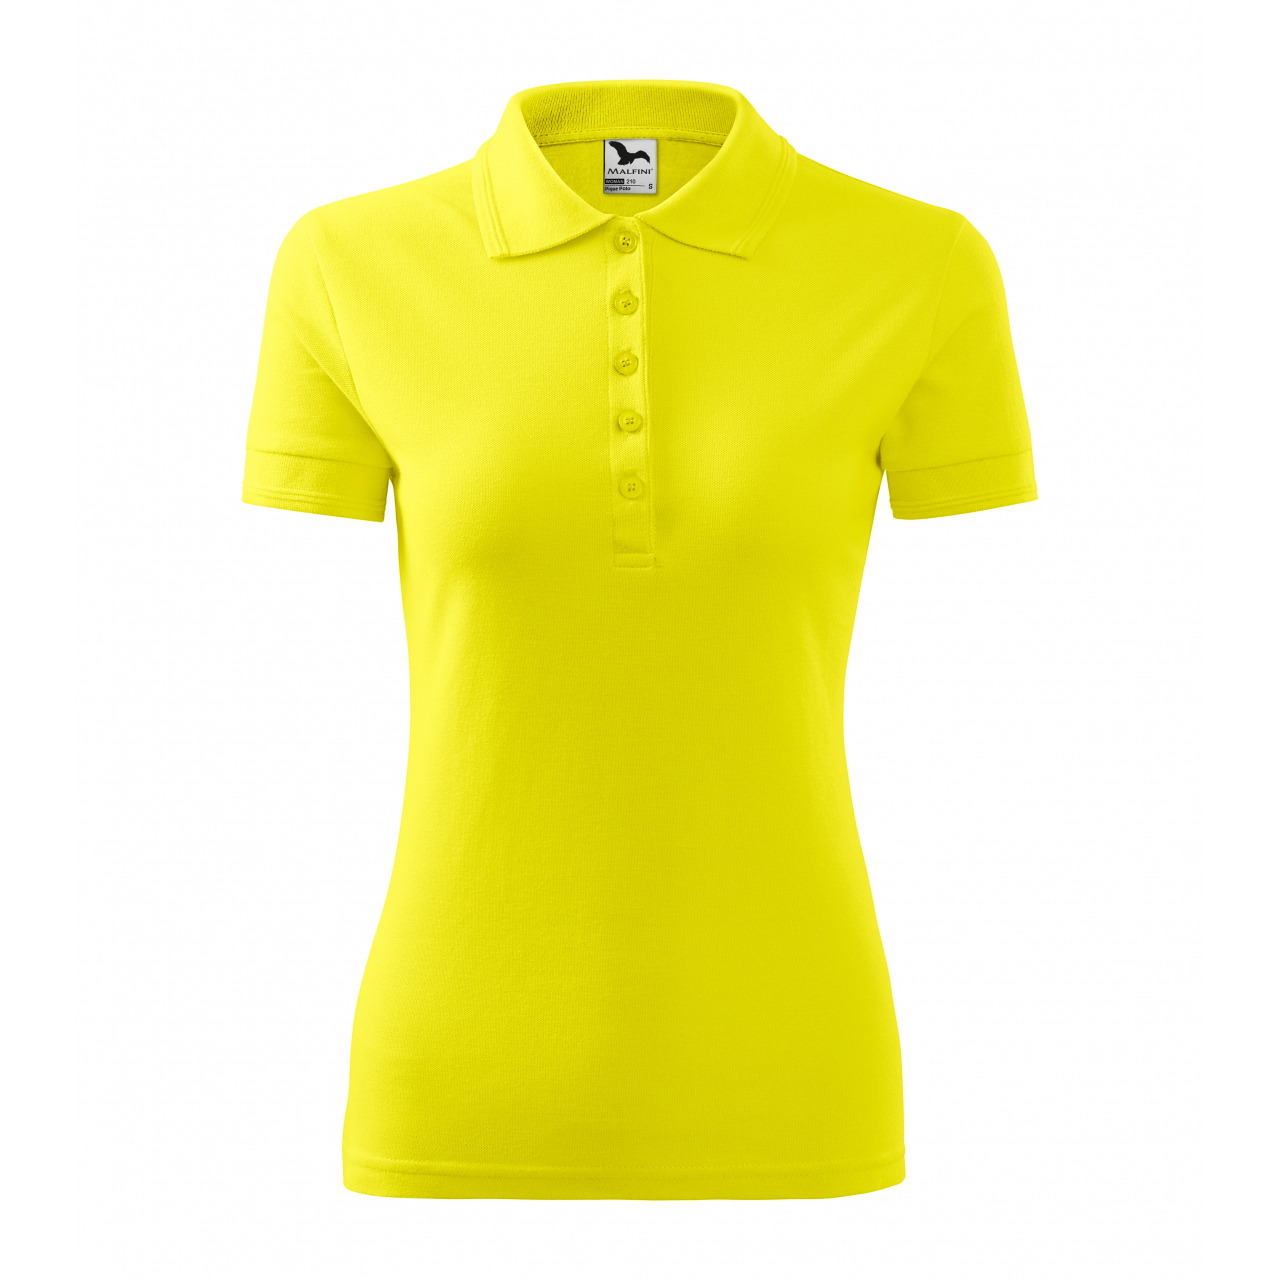 Polokošile dámská Malfini Pique Polo - světle žlutá, XL